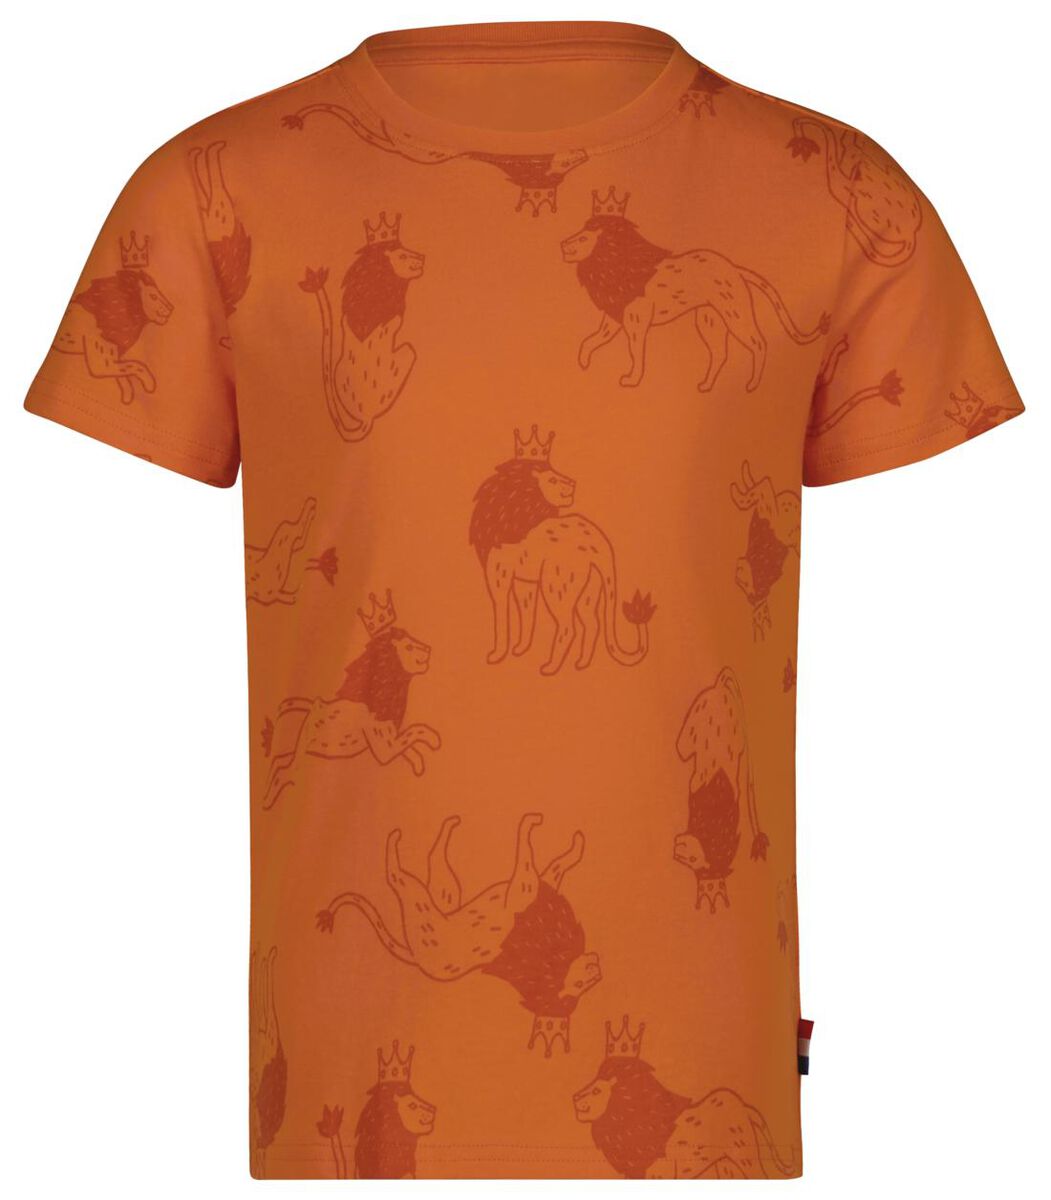 Gehoorzaam Haiku Wet en regelgeving kinder t-shirt Koningsdag oranje - HEMA